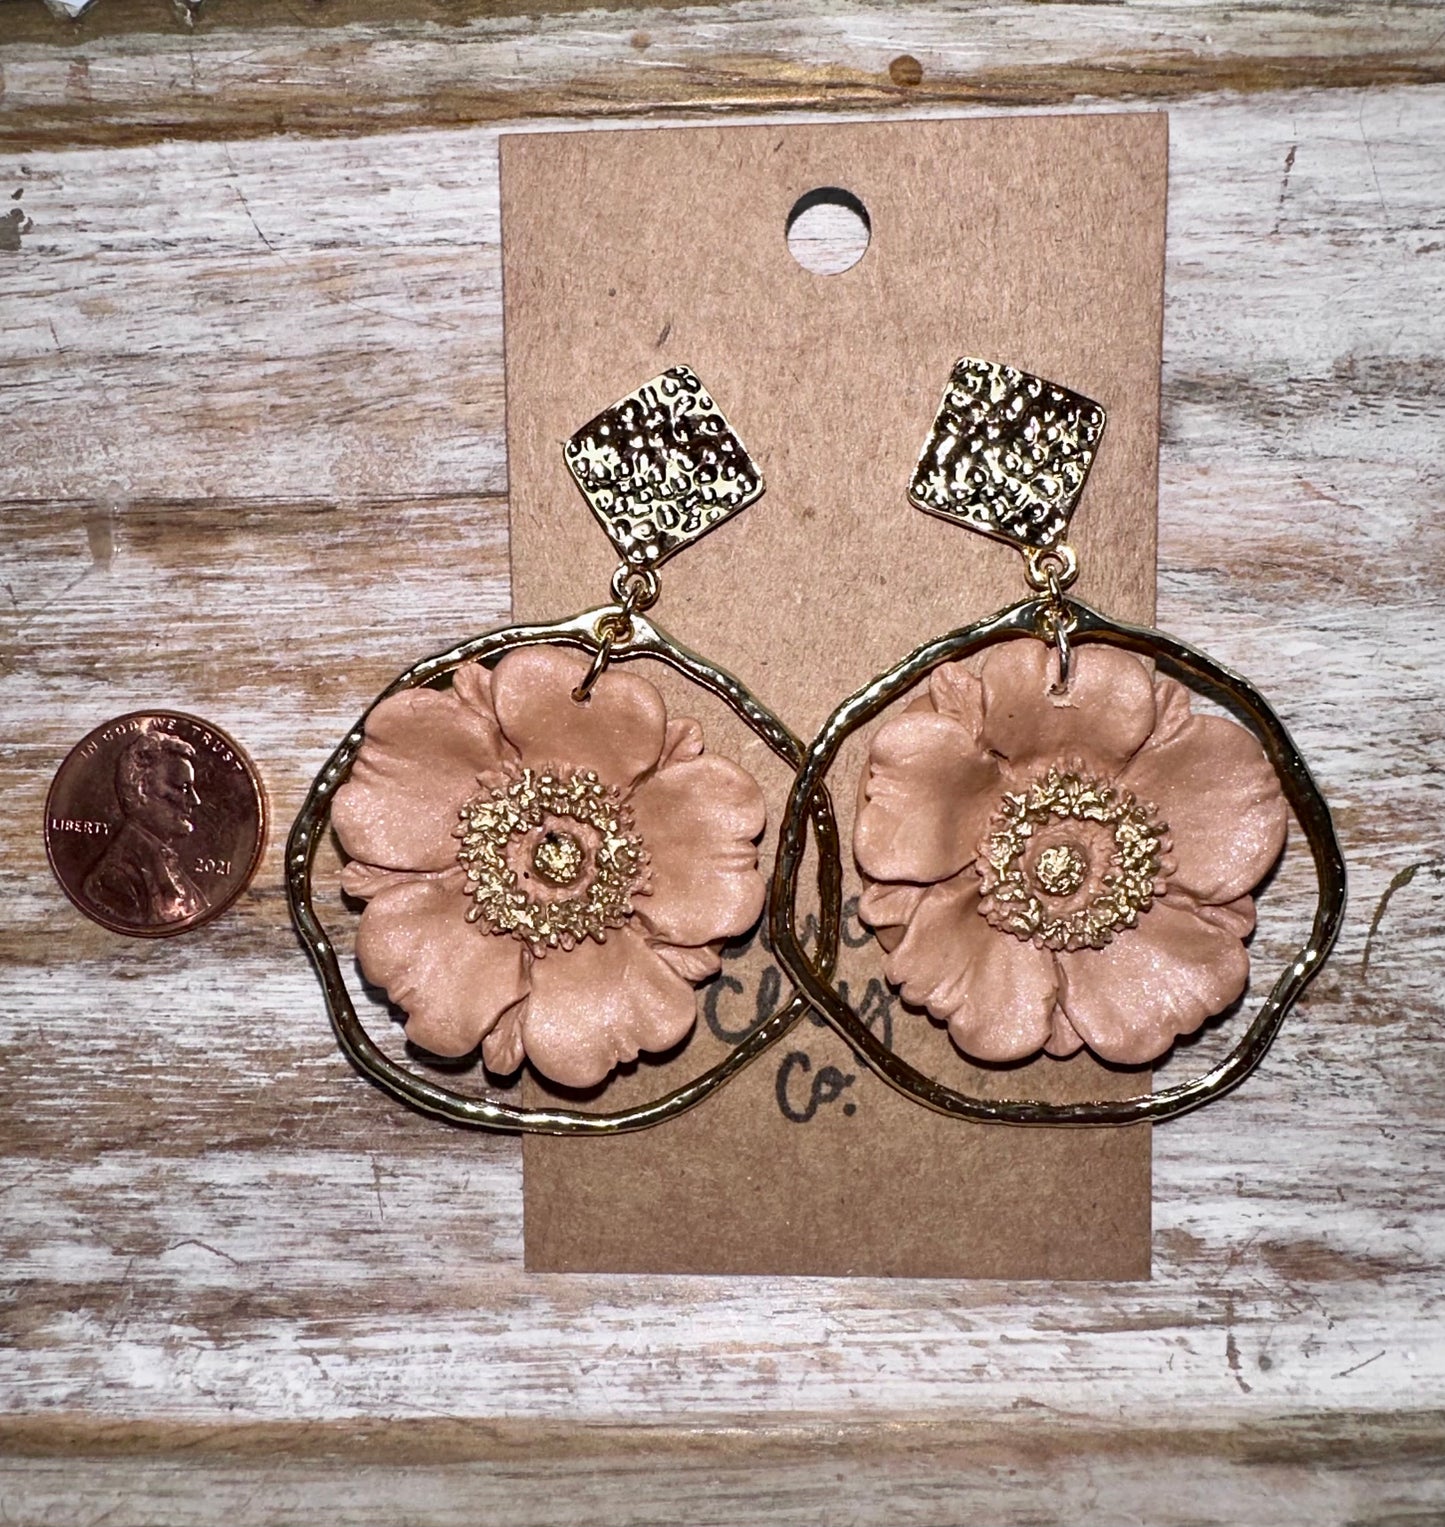 Poppy flower earrings